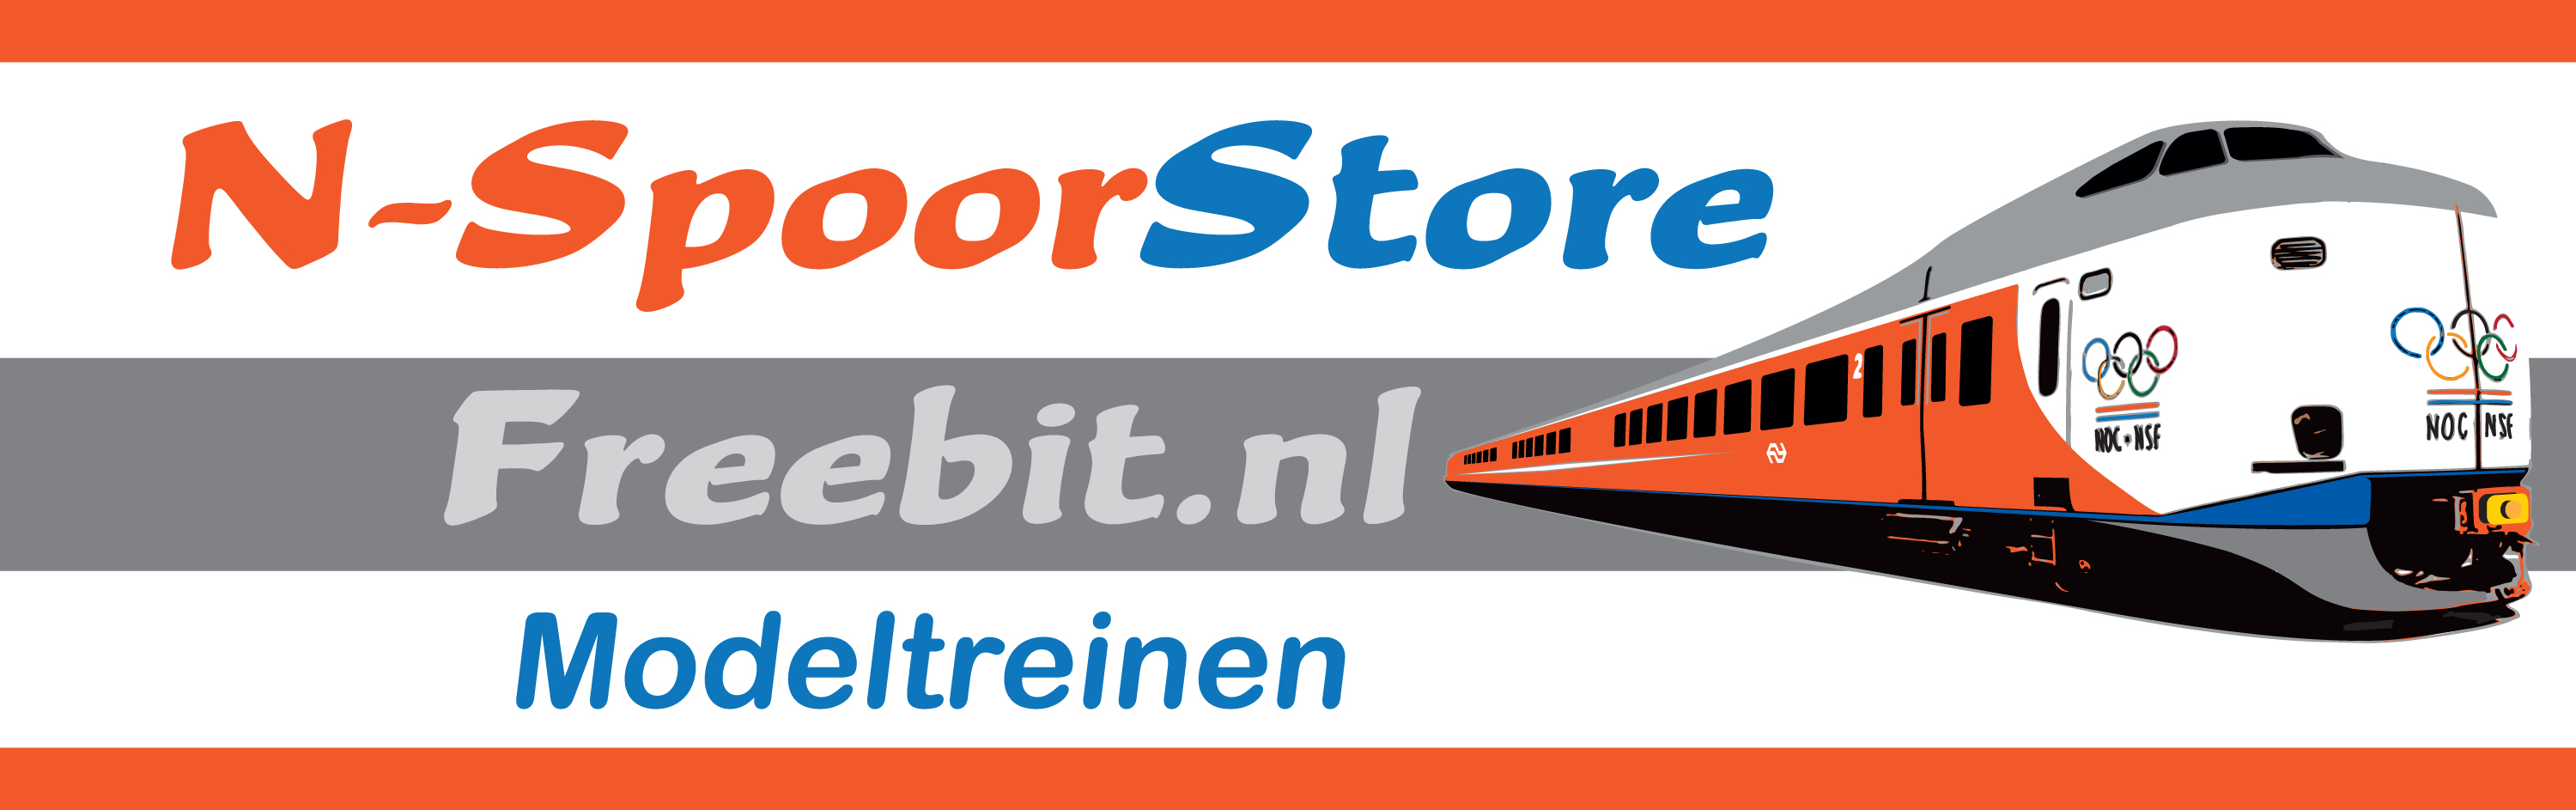 2018-Logo-Freebit-N-Spoorstore.jpg